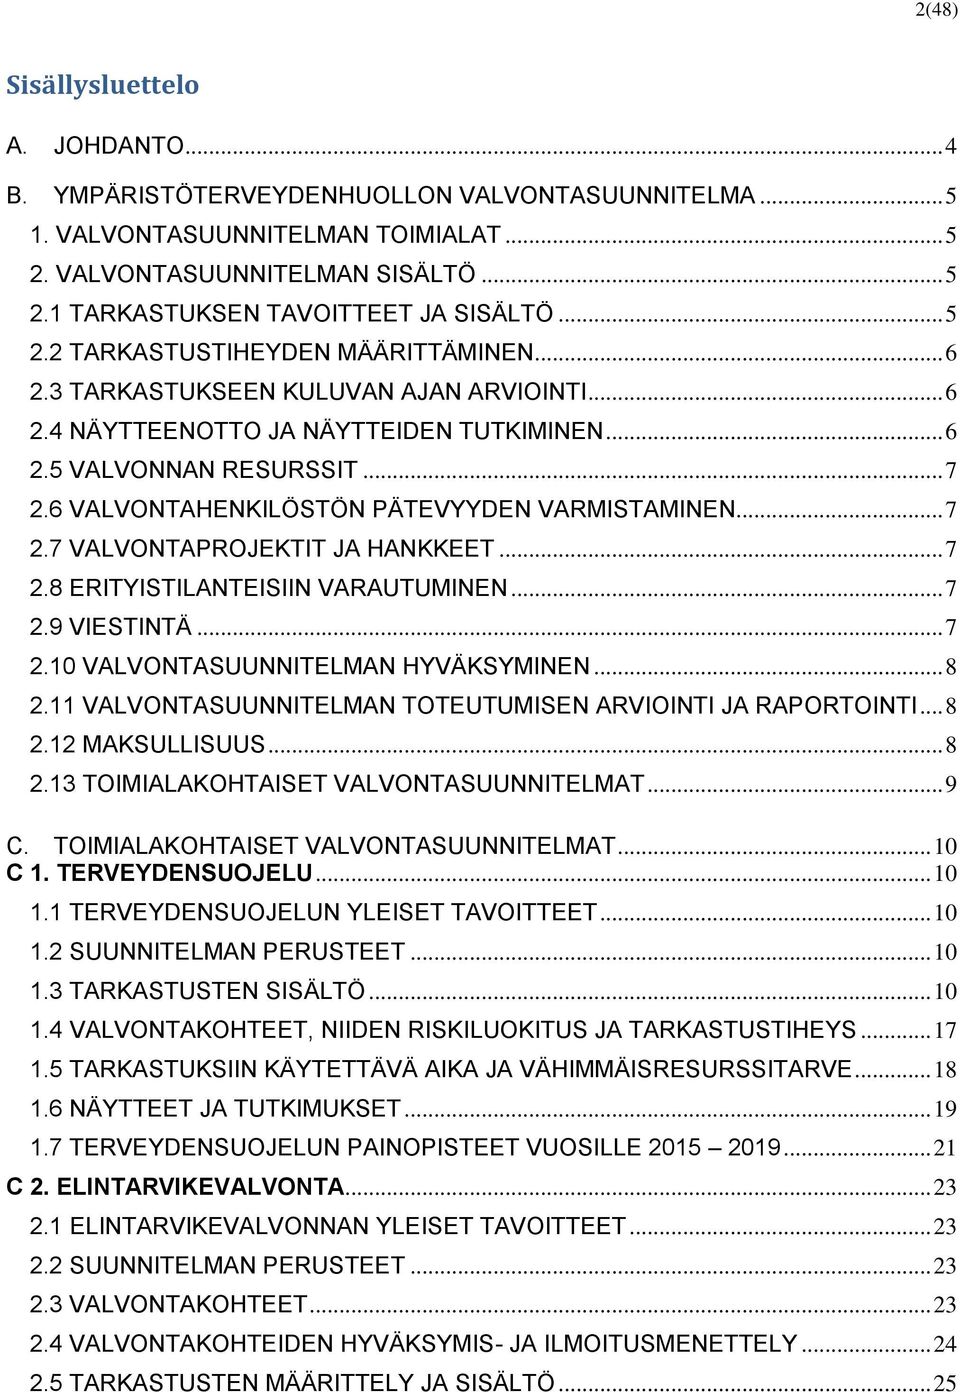 6 VALVONTAHENKILÖSTÖN PÄTEVYYDEN VARMISTAMINEN... 7 2.7 VALVONTAPROJEKTIT JA HANKKEET... 7 2.8 ERITYISTILANTEISIIN VARAUTUMINEN... 7 2.9 VIESTINTÄ... 7 2.10 VALVONTASUUNNITELMAN HYVÄKSYMINEN... 8 2.